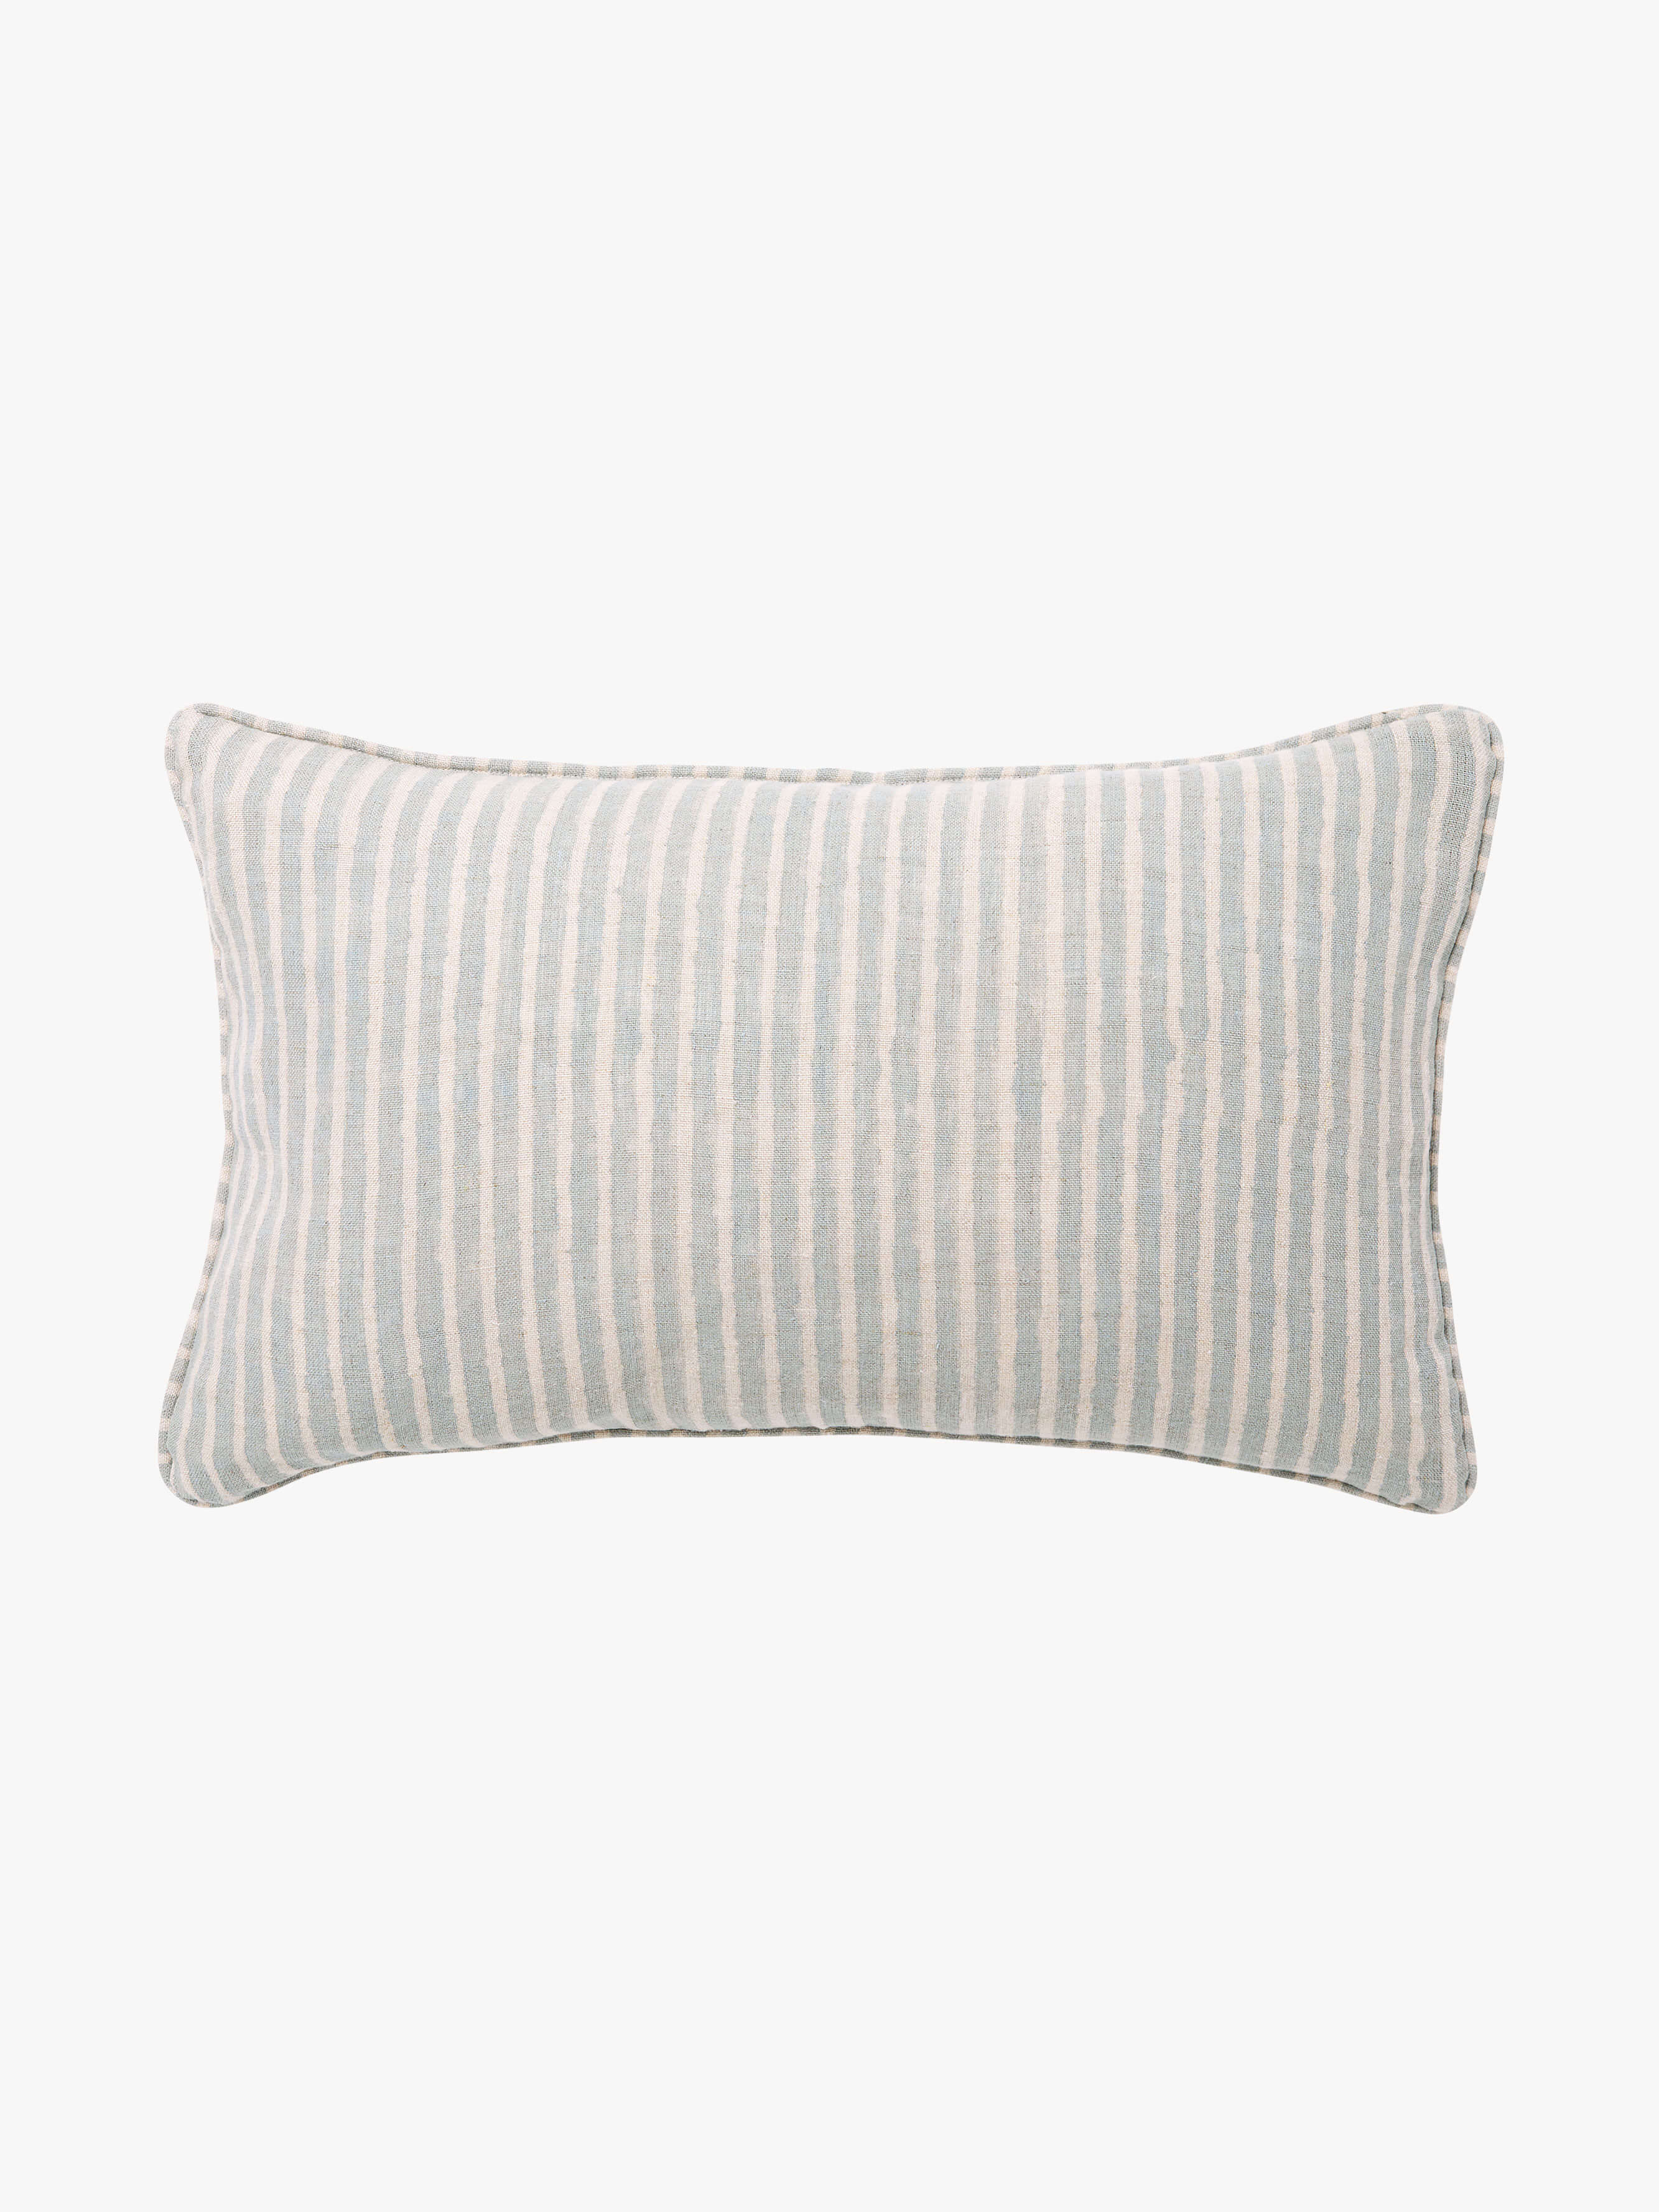 Gia Aqua Reversible Linen Cushion